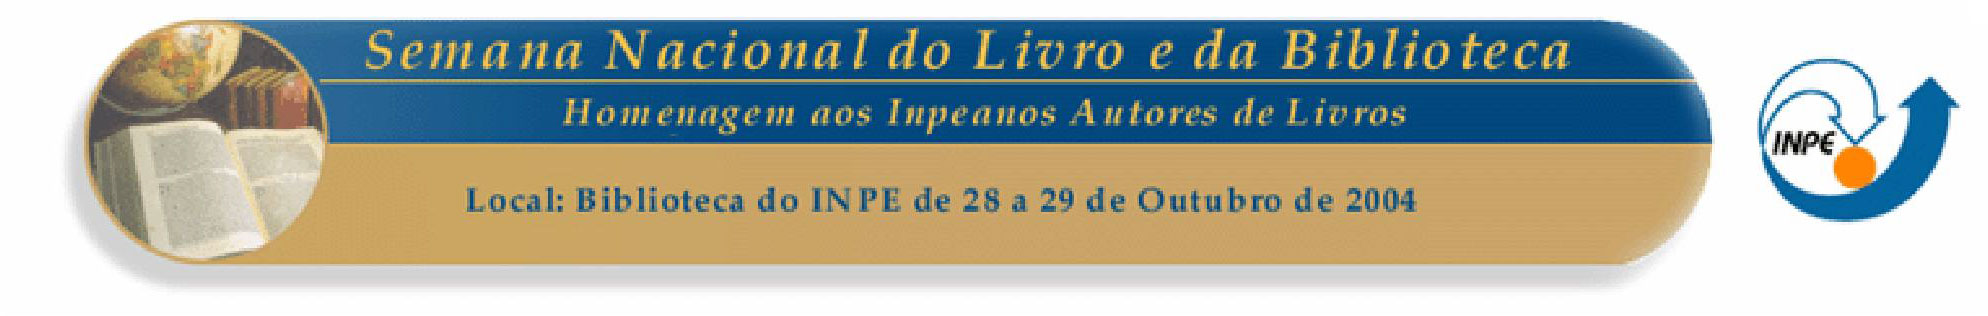 Banner - Semana Nacional do Livro e da Biblioteca